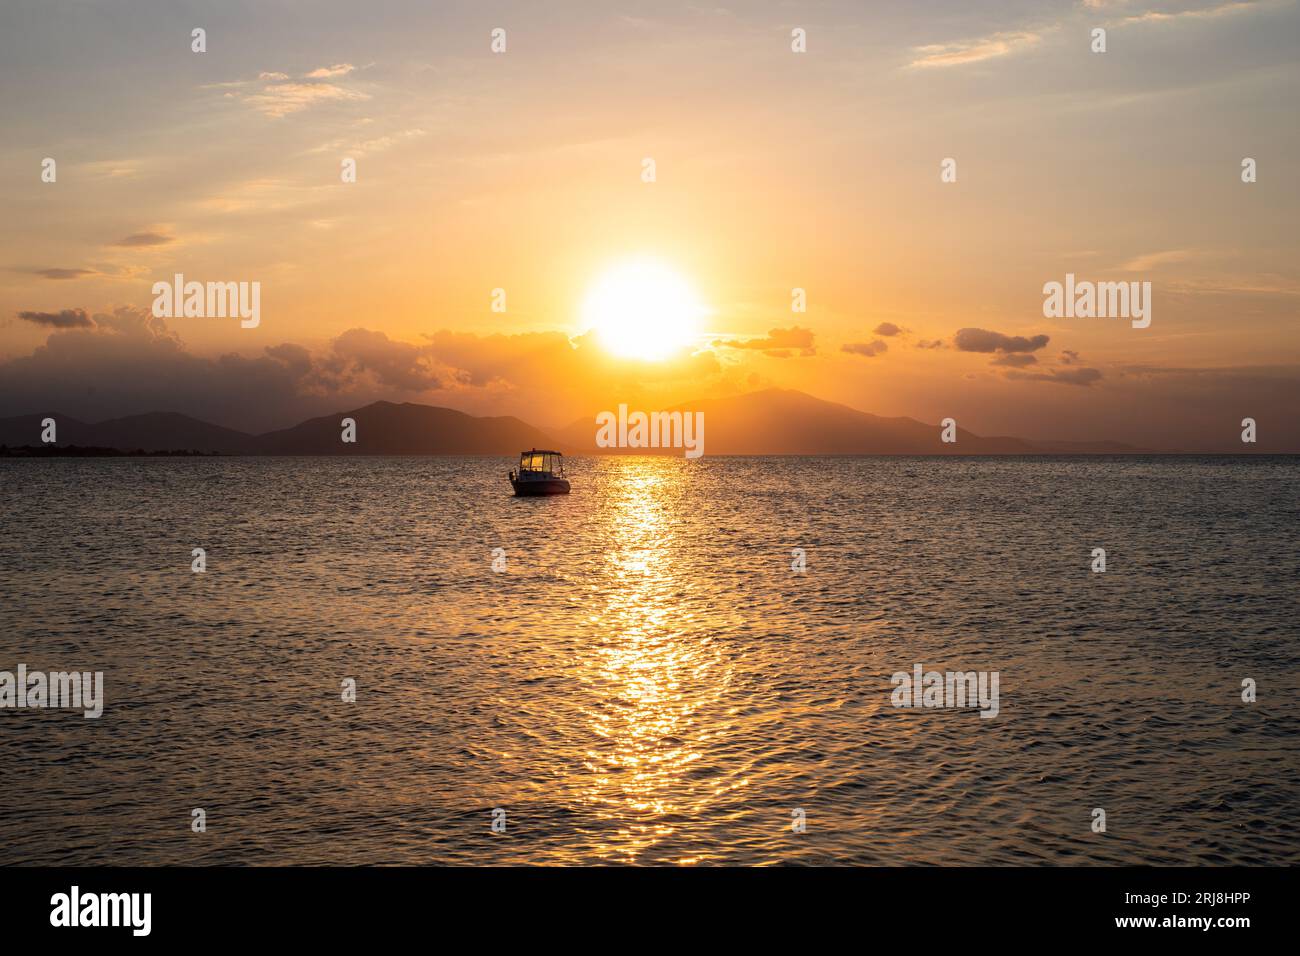 Coucher de soleil sur la mer Égée sur l'île d'Evia en Grèce. Soleil couchant derrière la montagne Pélion Banque D'Images